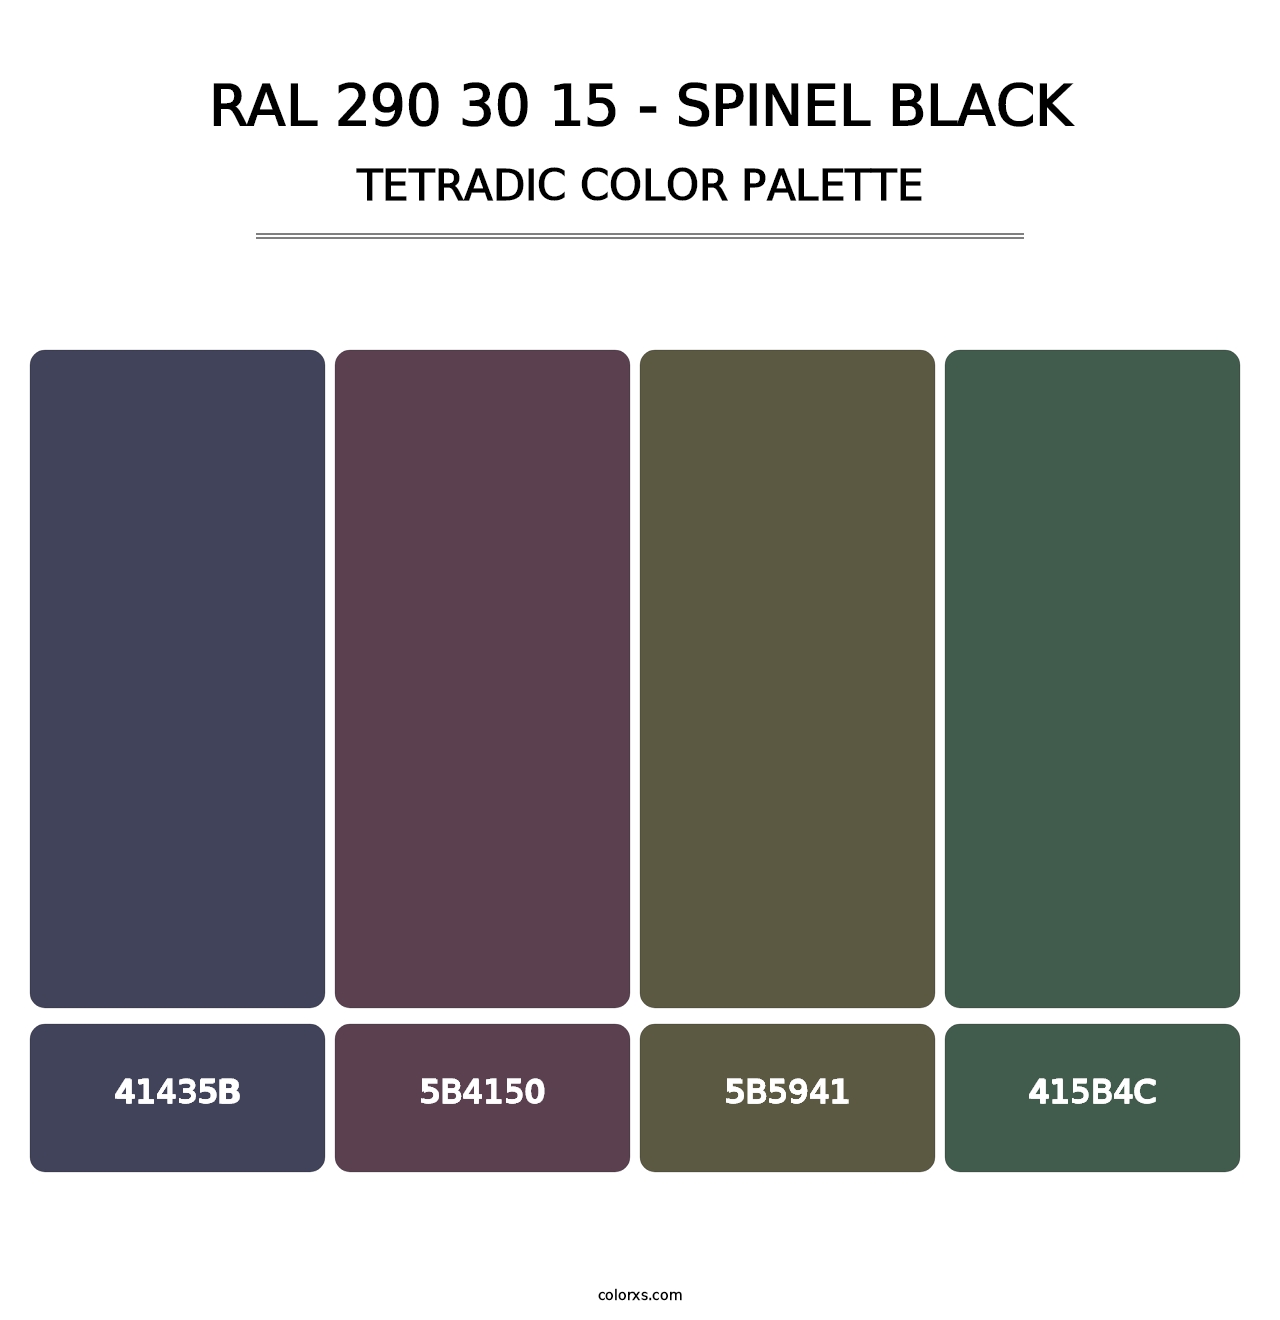 RAL 290 30 15 - Spinel Black - Tetradic Color Palette